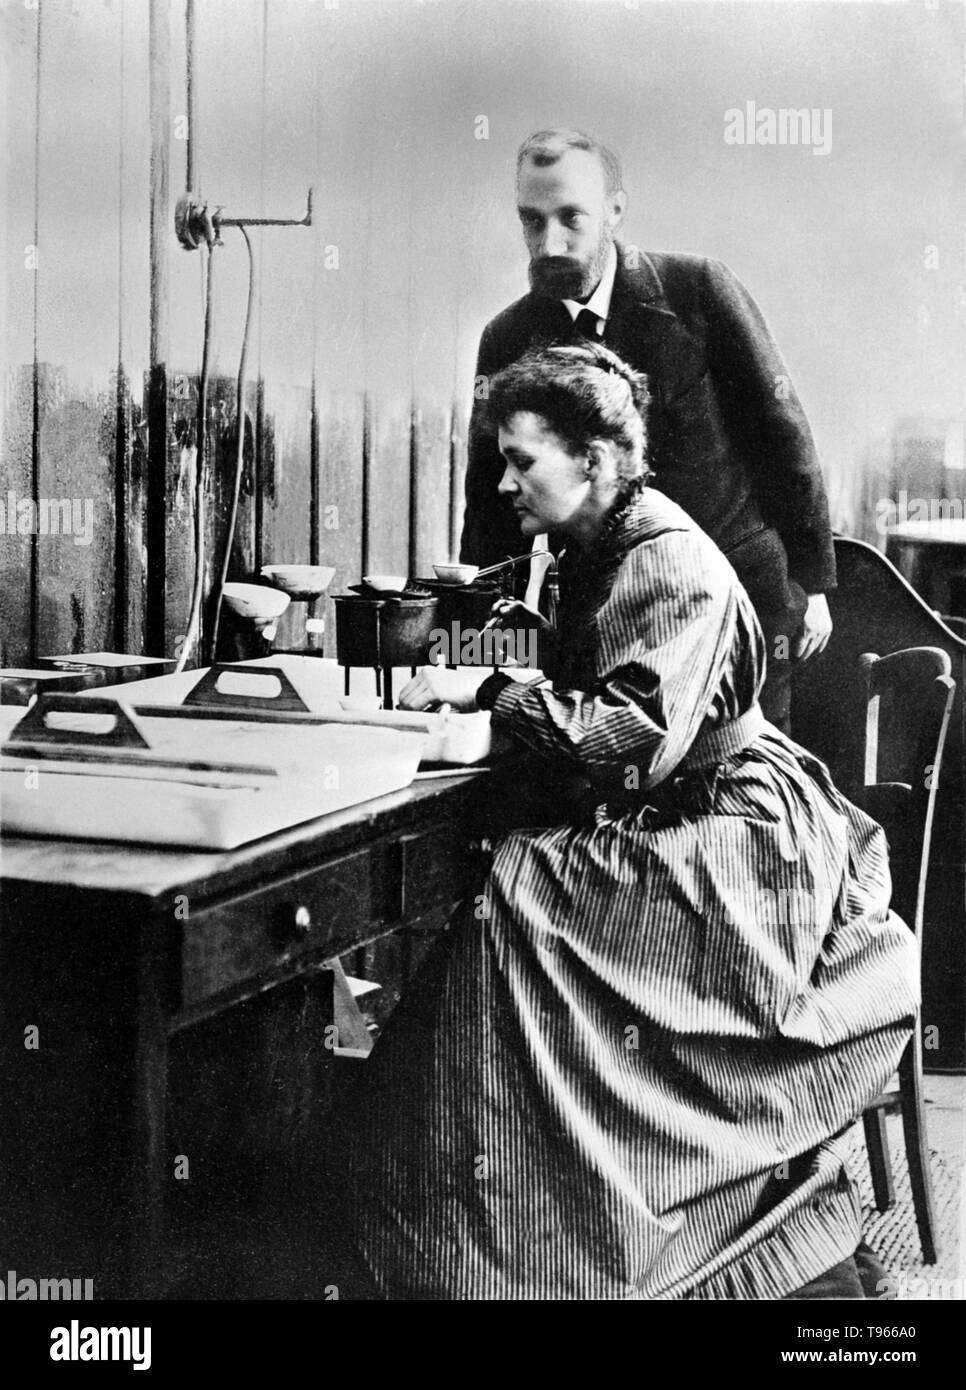 Marie e Pierre Curie nel loro laboratorio a Parigi. Pierre Curie è stato introdotto a Maria Sklodowska da un amico e prese Maria nel suo laboratorio come suo allievo. Egli ha iniziato a considerare la sua come la sua musa. Ha rifiutato la sua proposta iniziale, ma hanno infine deciso di sposare lui sulla luglio 26, 1895. Marie Curie (Novembre 7, 1867 - 4 luglio 1934) era un Polish-French fisico e chimico. Foto Stock